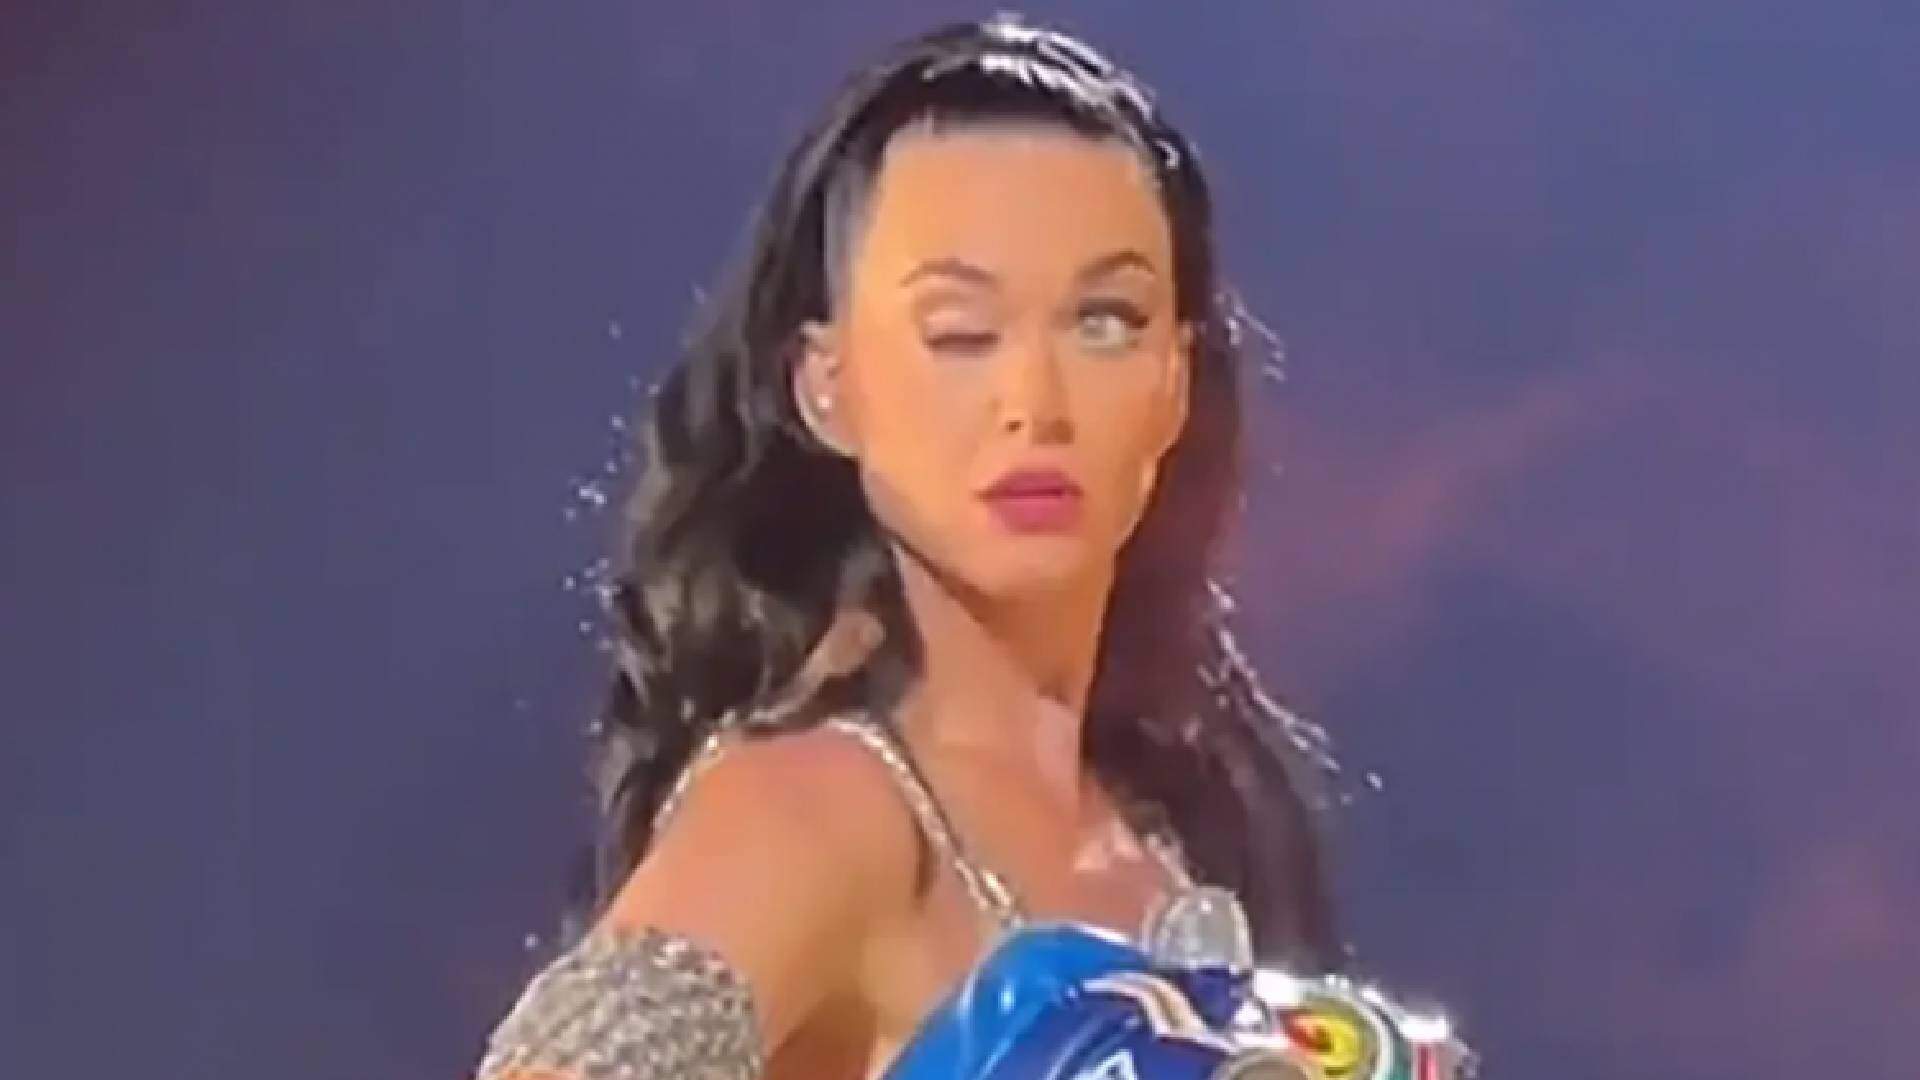 Katy Perry revela verdadeiro motivo por não conseguir abrir um dos olhos durante show